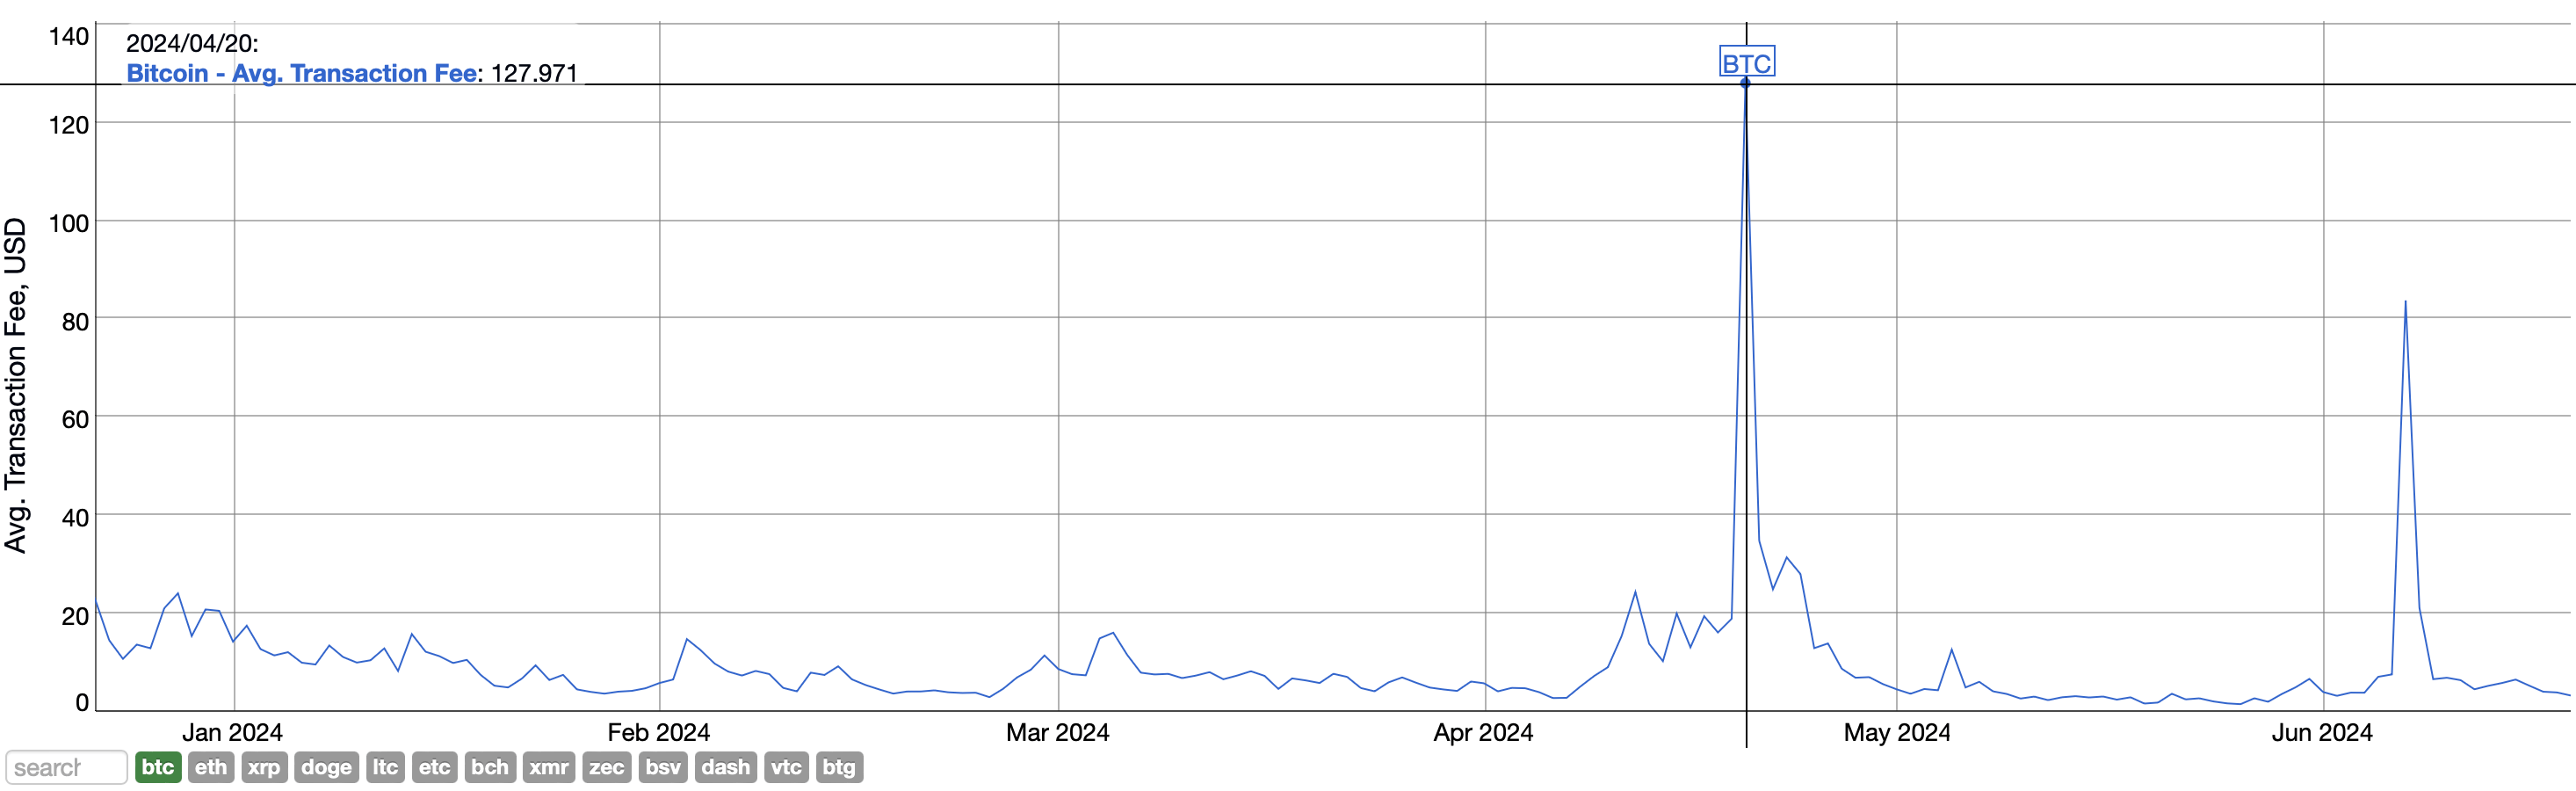 Активность в сети Биткоина опустилась до годового минимума. С чем связано падение показателя? График средней комиссии в сети Биткоина. Фото.